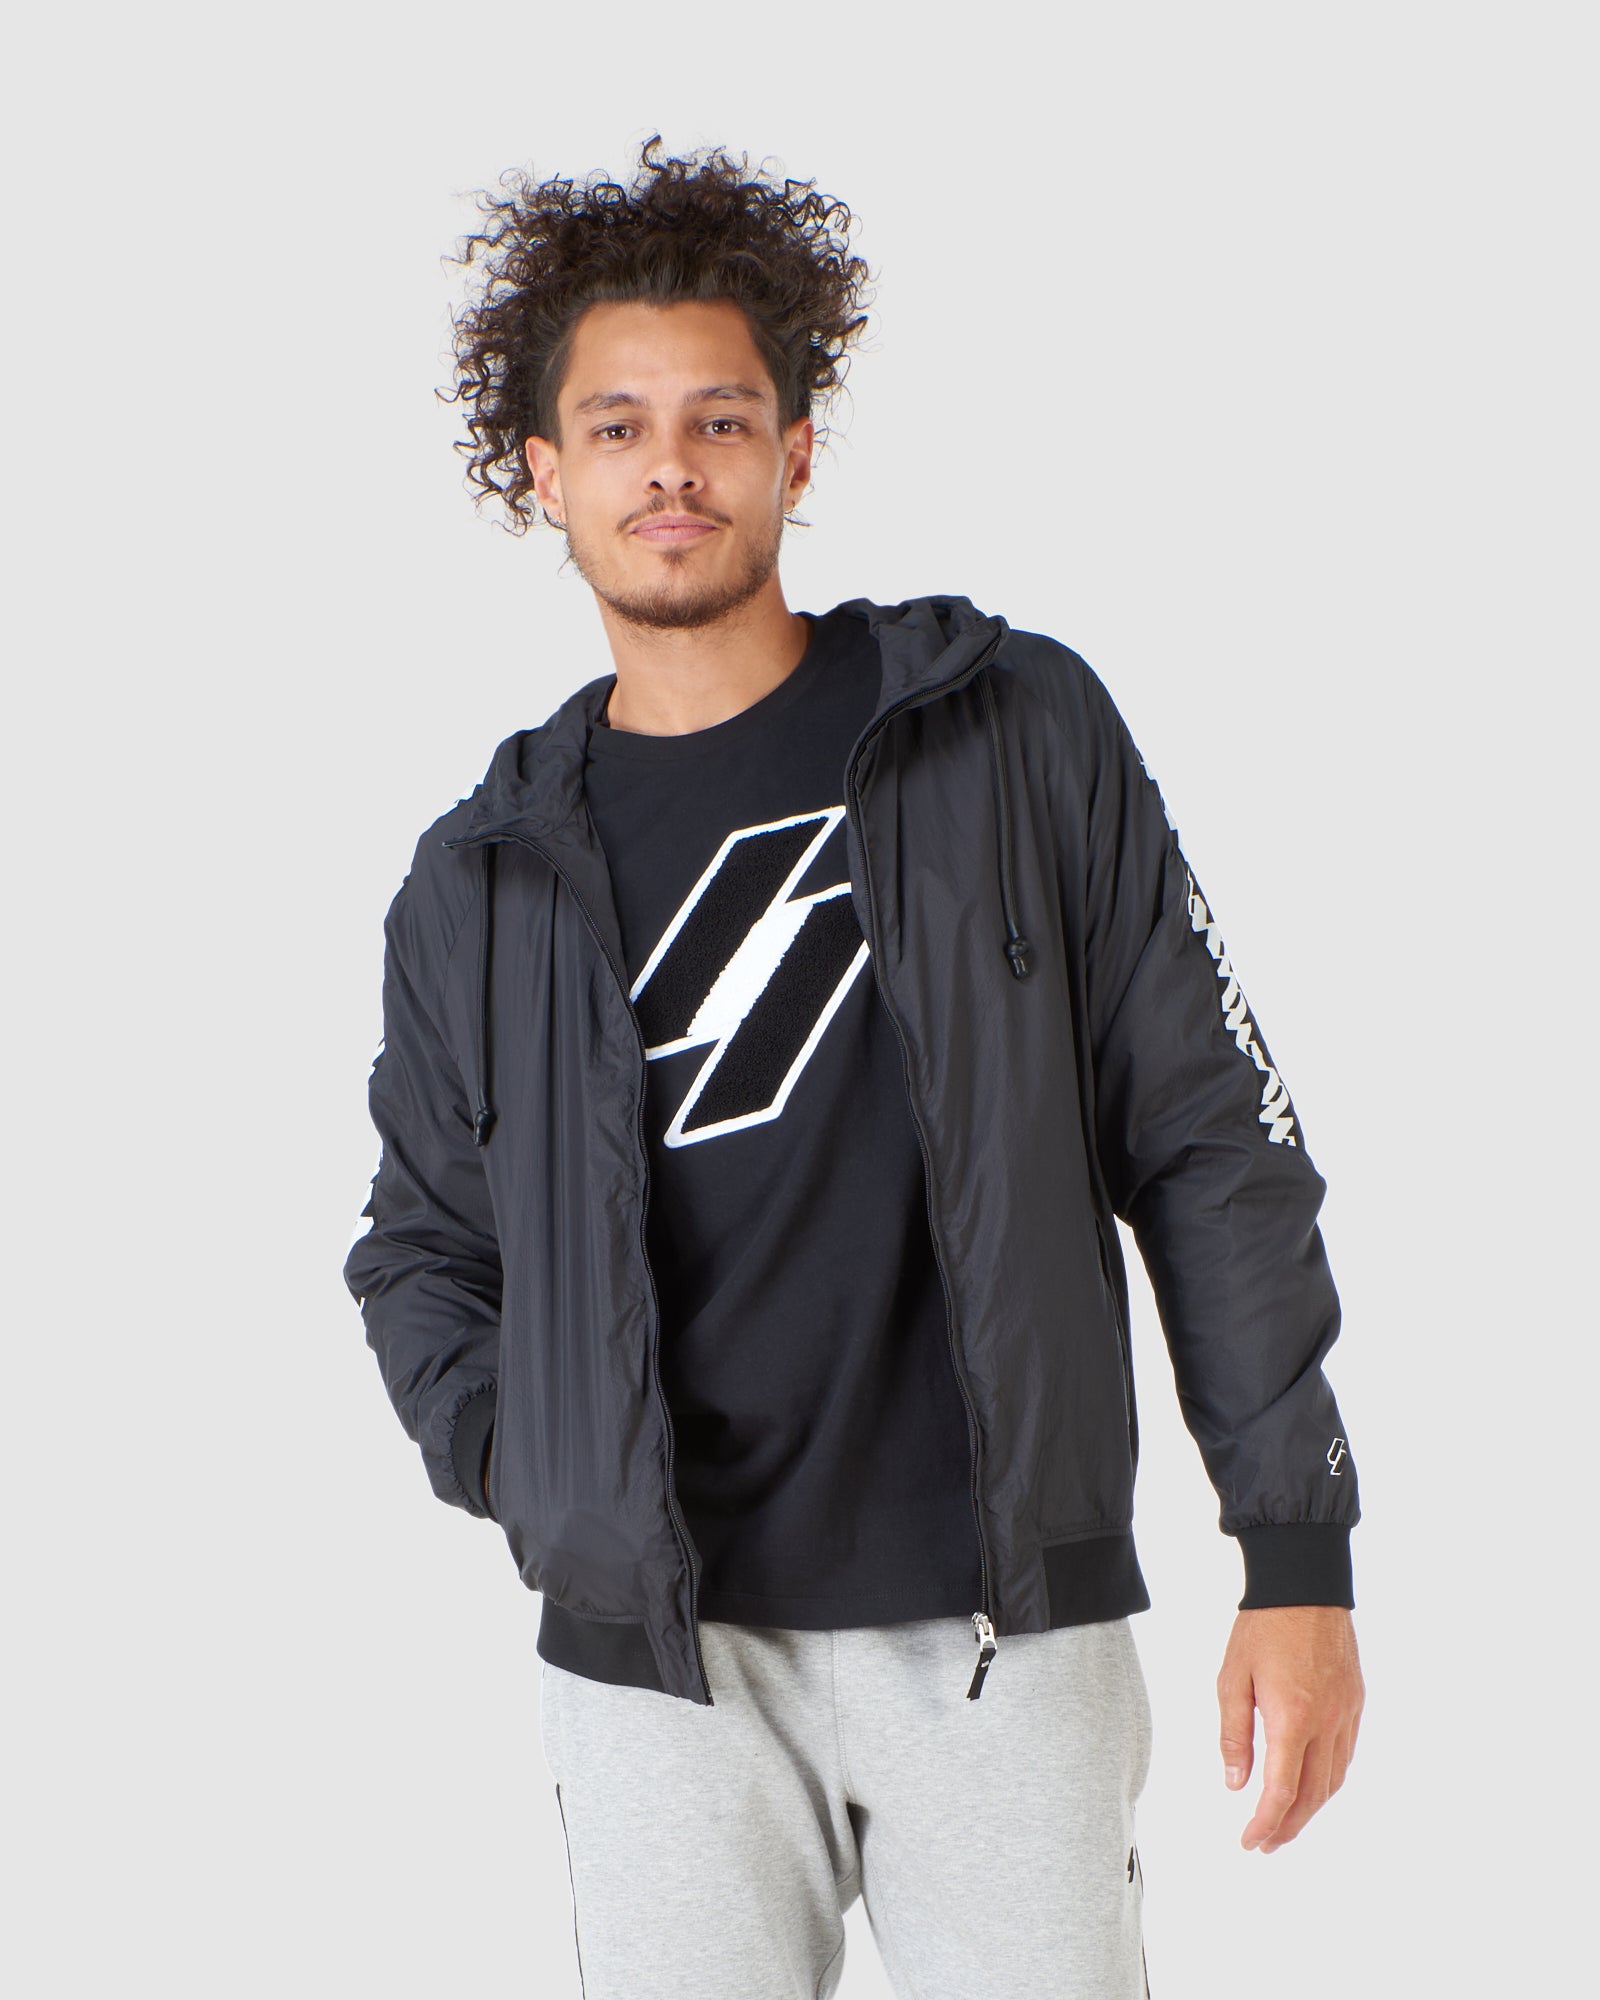 sapato : Icônico e streetwear - Superdry Brasil outlet, Superdry t shirt  captura a cultura de rua e abraça o estilo de vida urbano com Superdry  jacket.